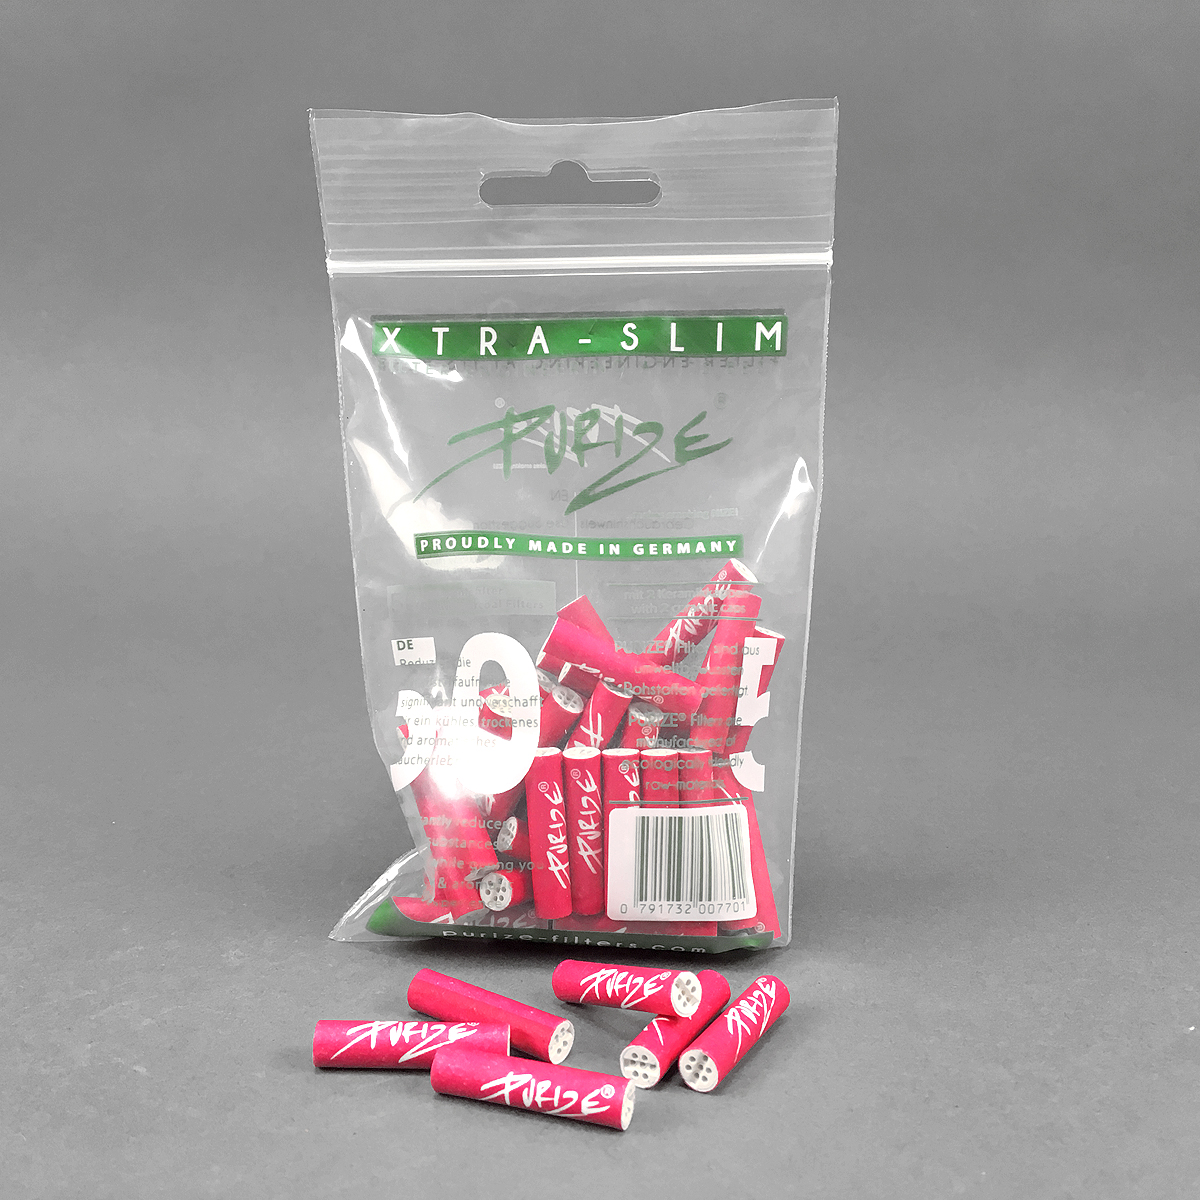 PURIZE® XTRA Pink, Filter 5/6 mm, Aktivkohle & Meerschaum, Headshop